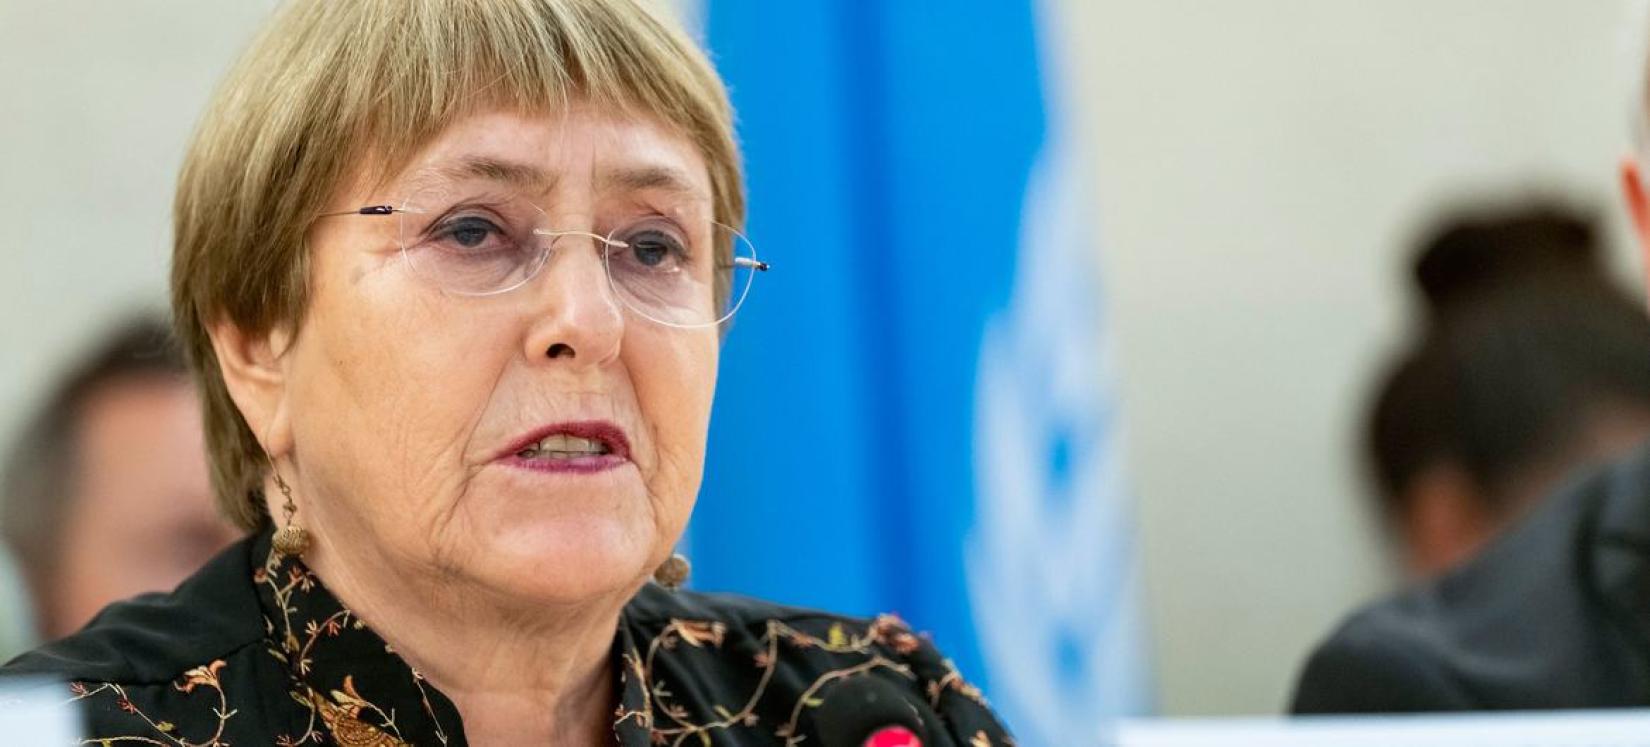 A Alta comissária das Nações Unidas para os Direitos Humanos, Michelle Bachelet, participa da 50ª sessão do Conselho de Direitos Humanos. 